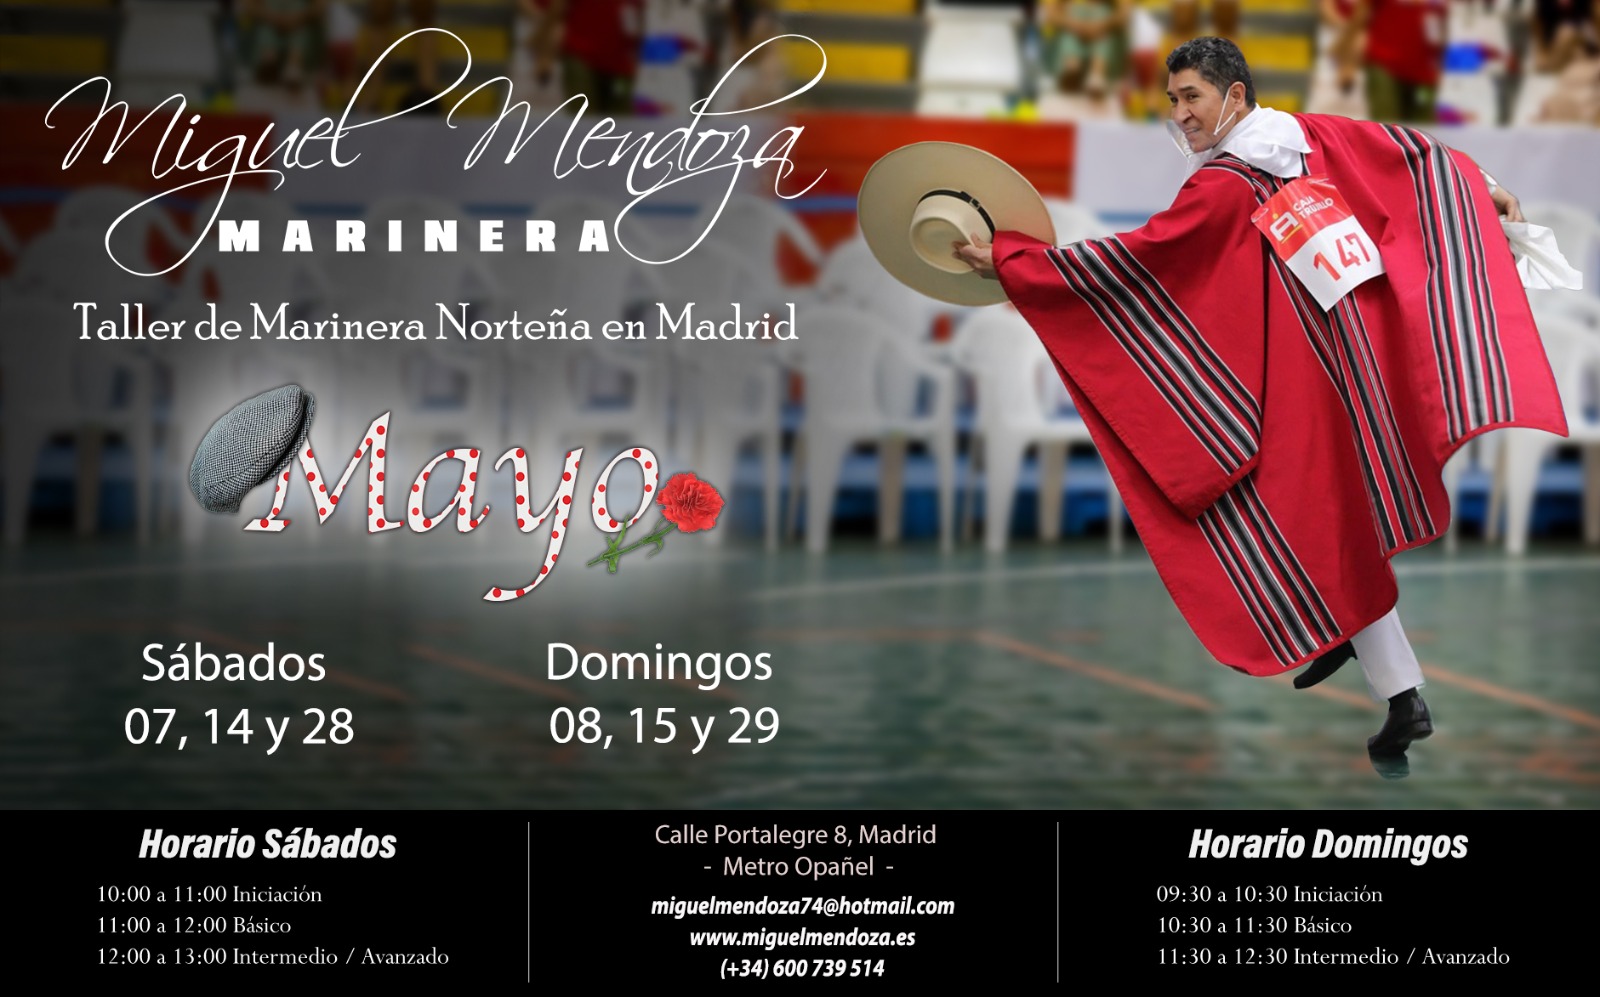 Grupal de Marinera Norteña Mayo 2022 (Madrid)